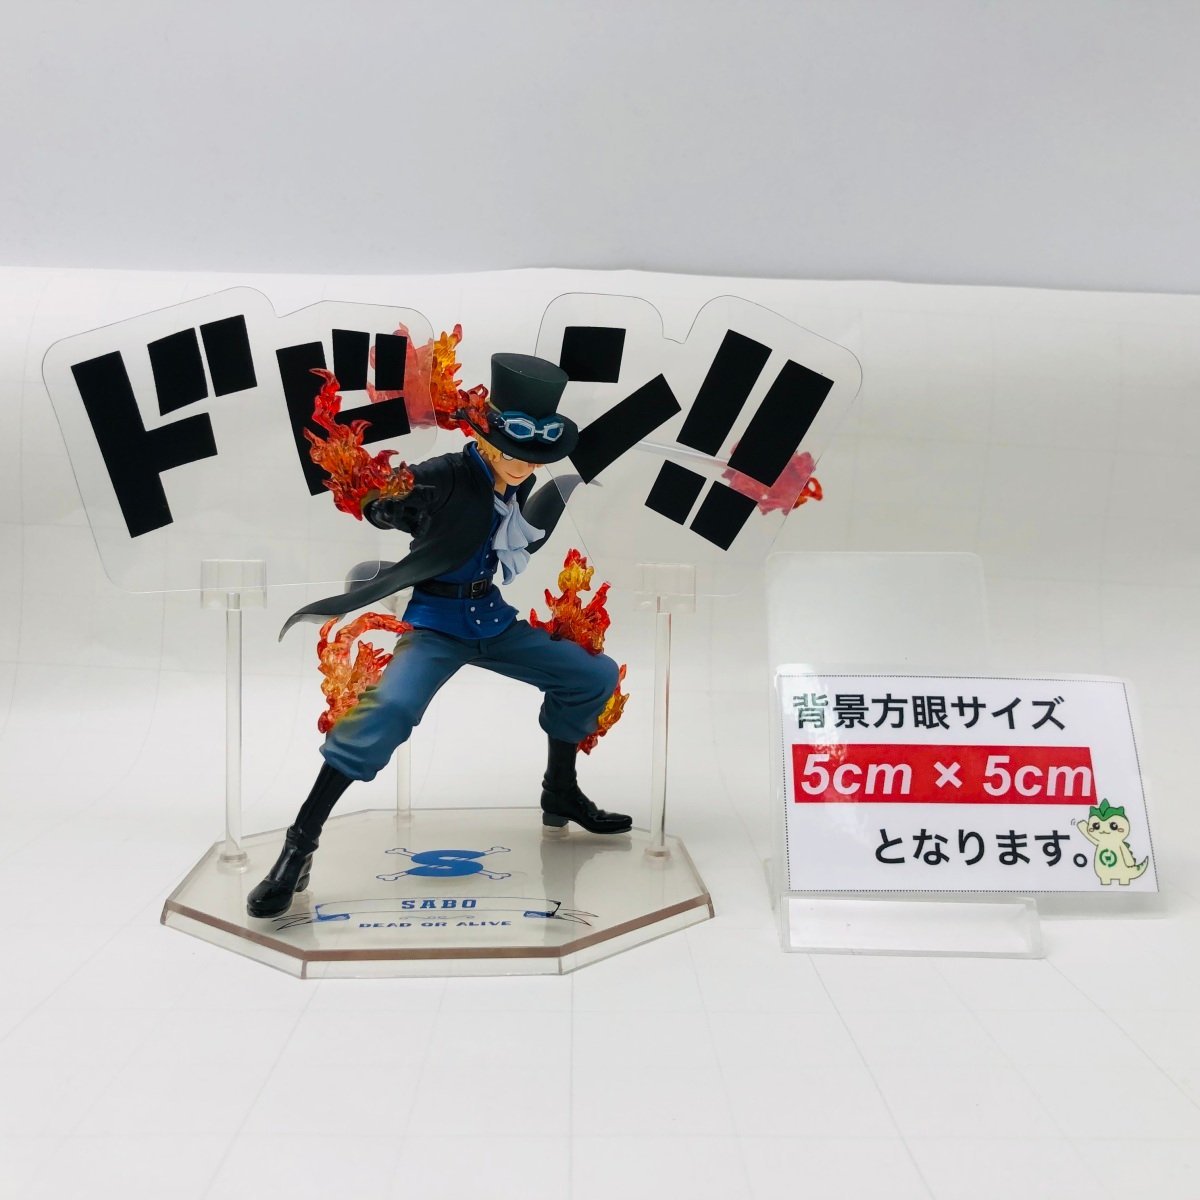 中古品 Figuarts ZERO フィギュアーツ ゼロ ワンピースサボ 5th Anniversary Edition_画像2